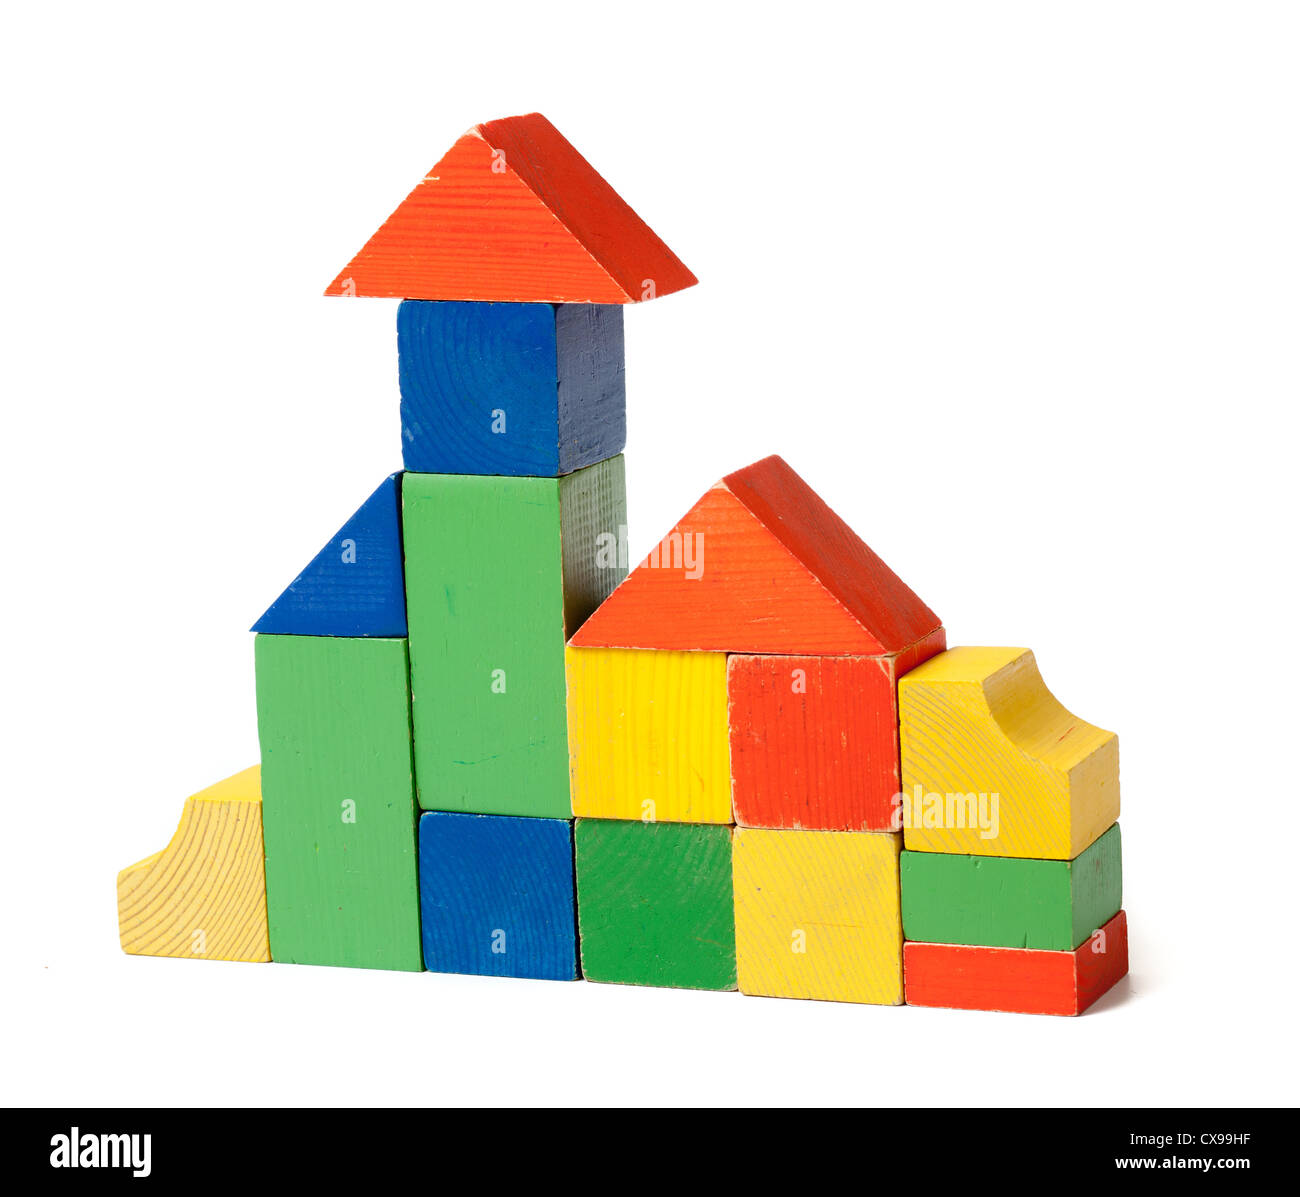 Chambre Simple faite de blocs de construction en bois coloré Banque D'Images